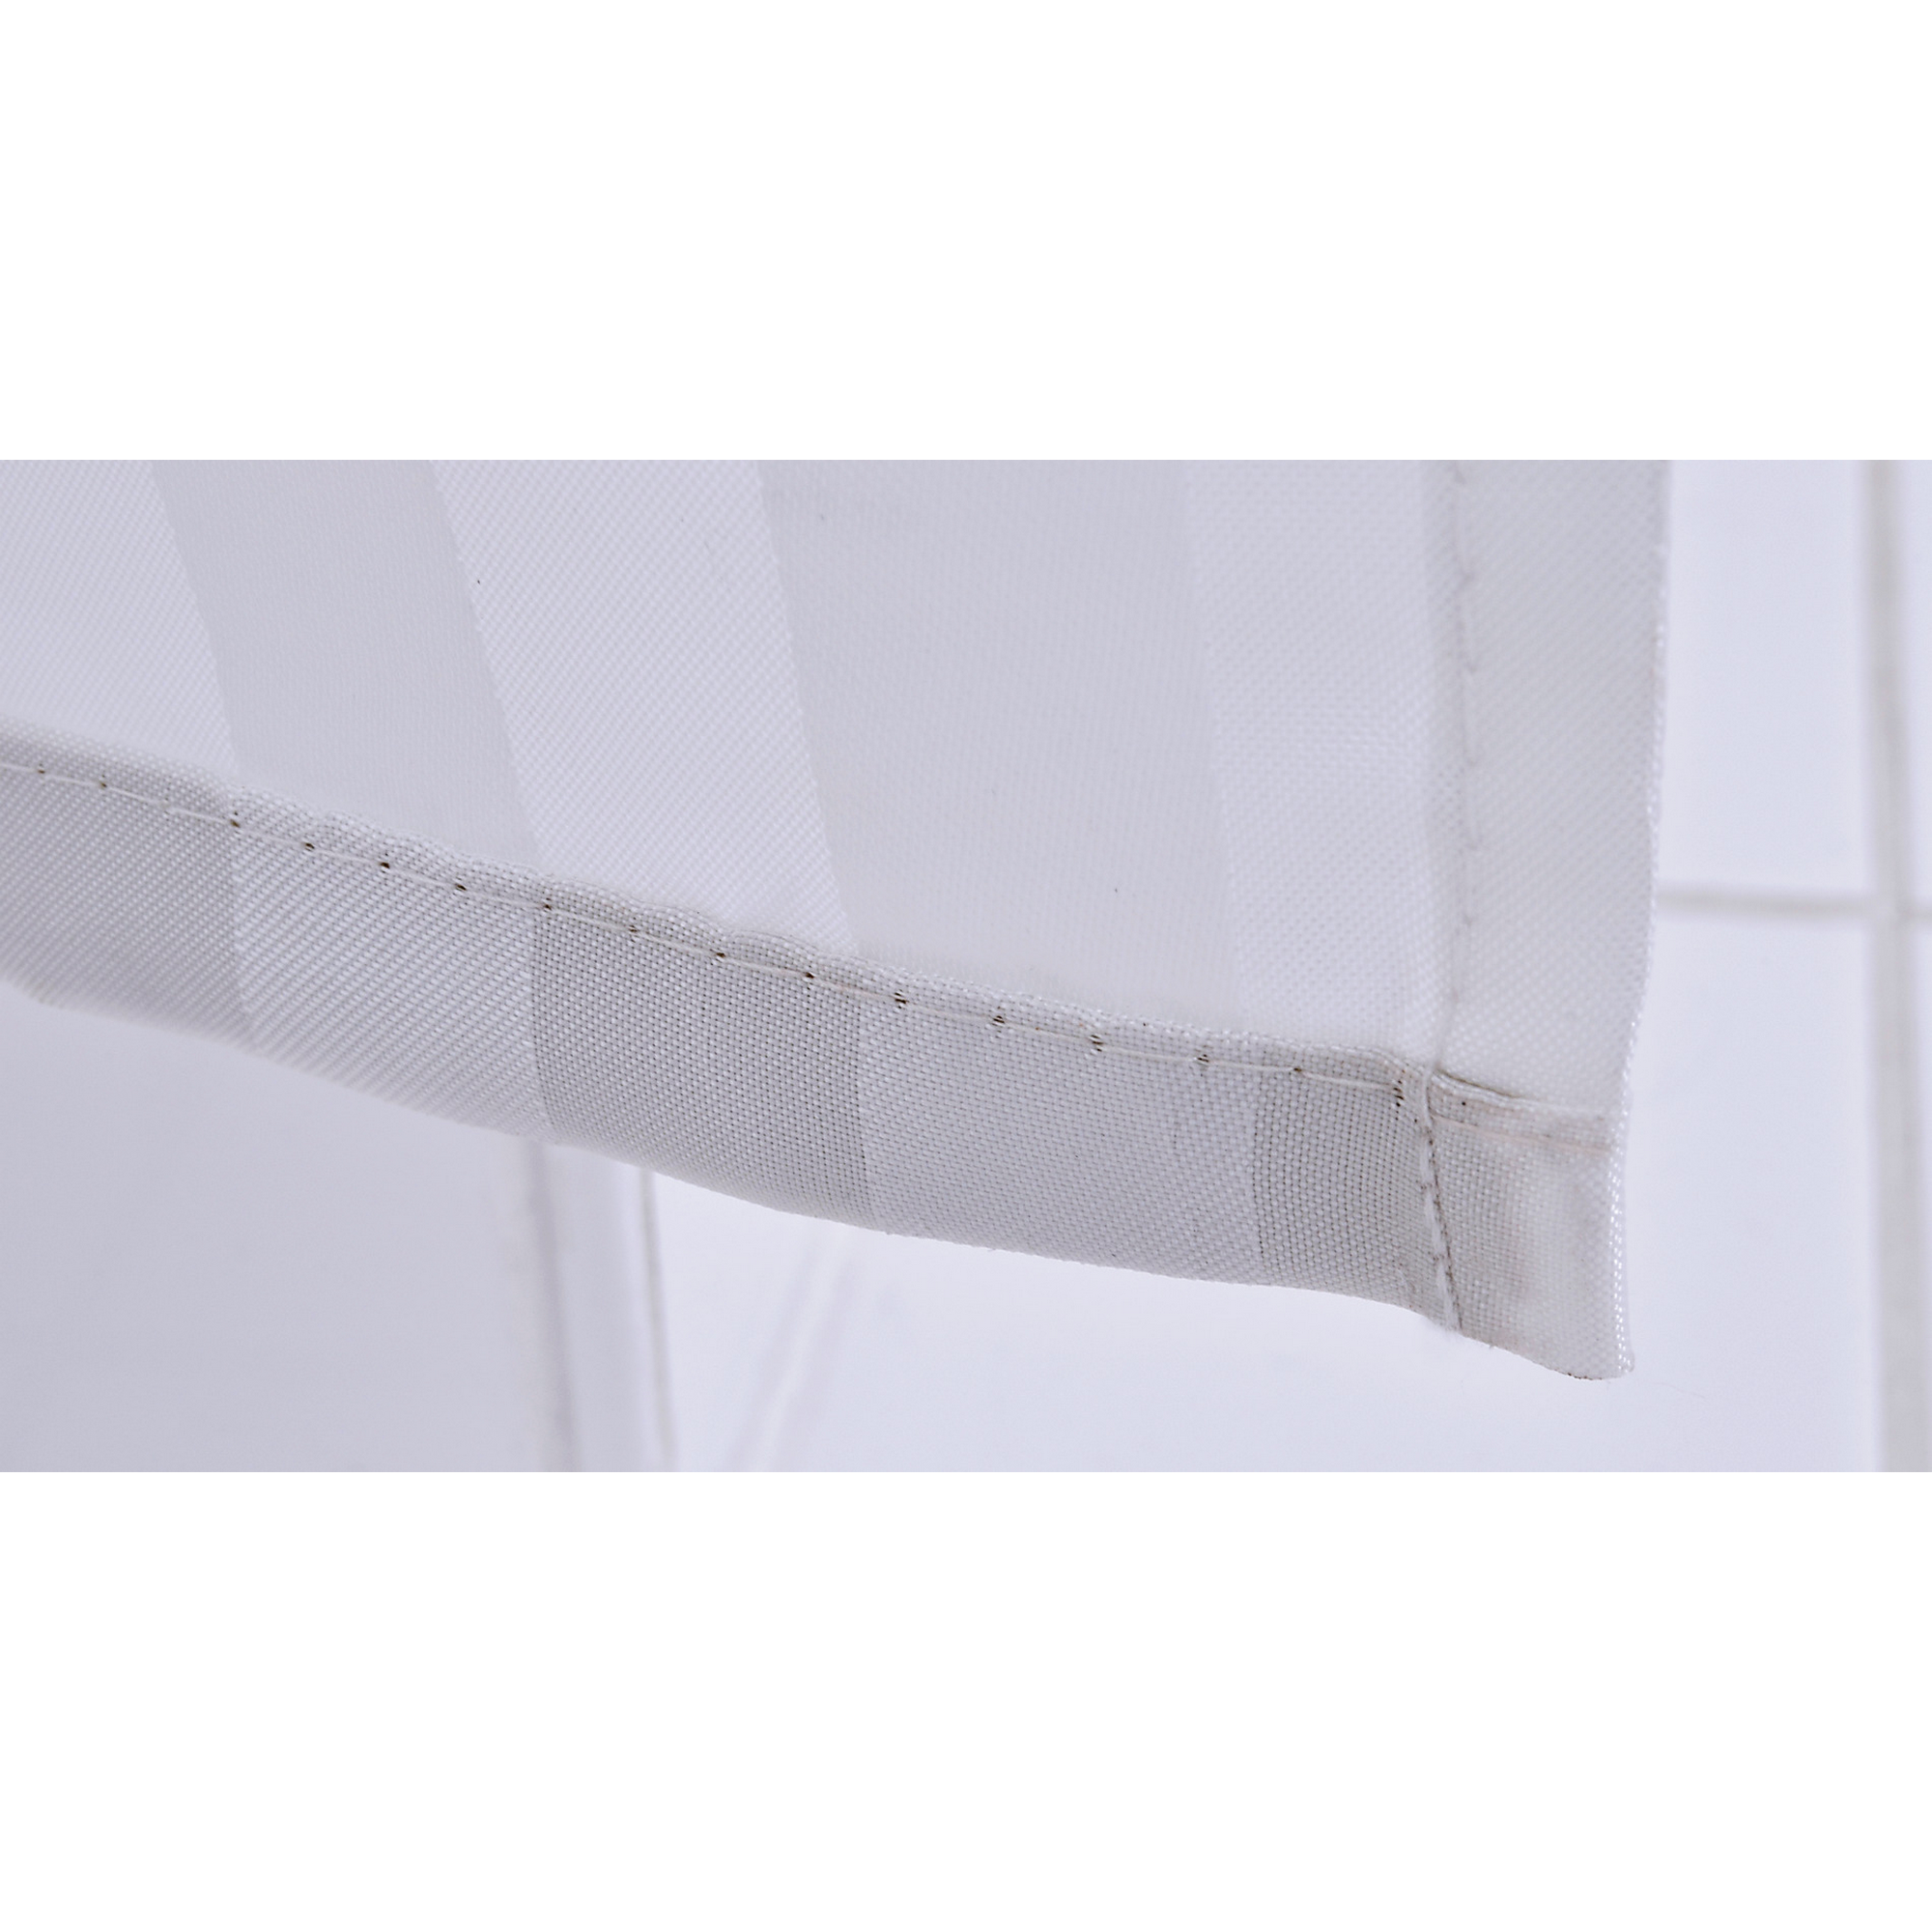 Duschvorhang 'Hurricane' Textil grau 180 x 200 cm + product picture